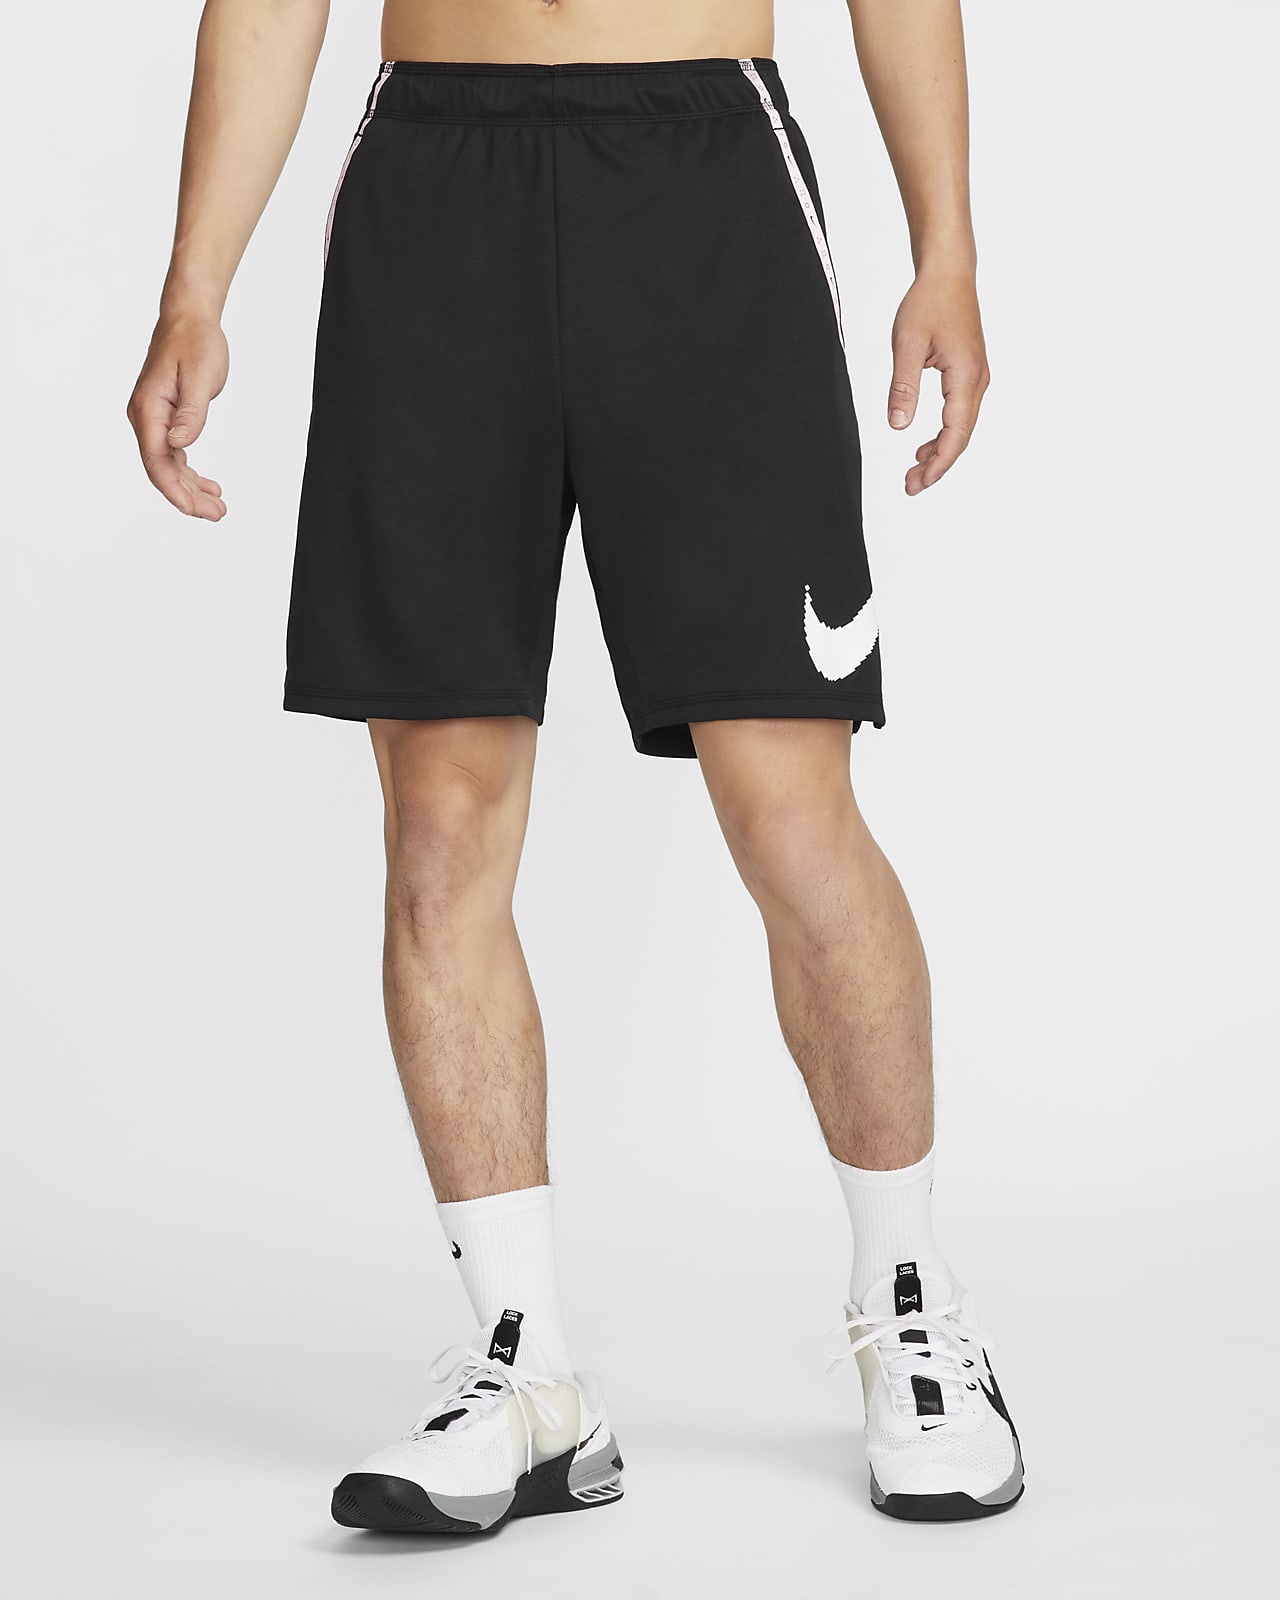 Nike Dri-FIT D.Y.E. Men's Knit Training Shorts